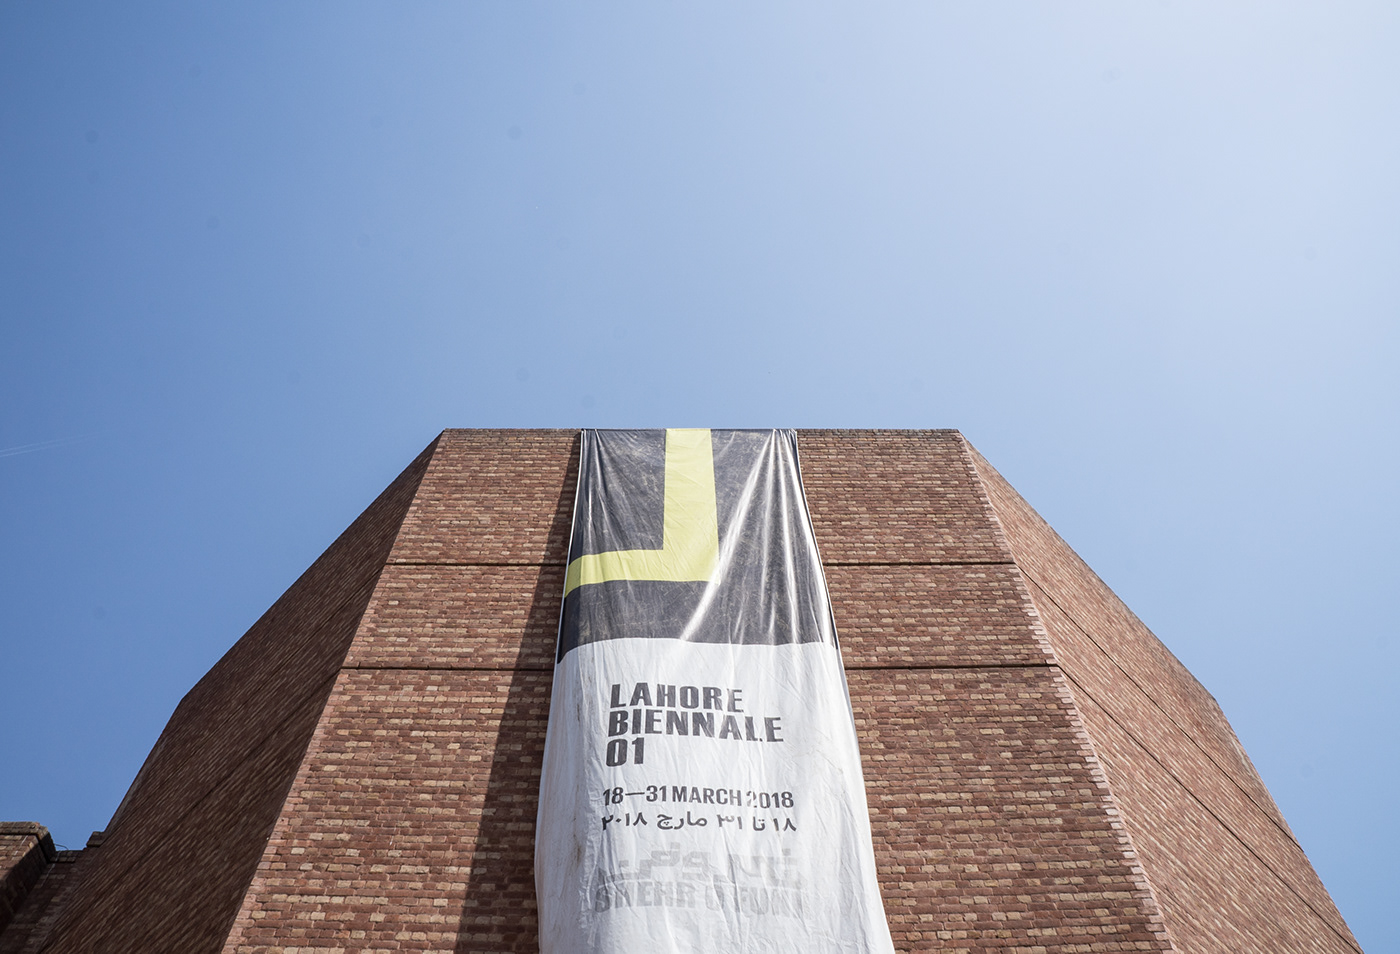 Lahore Biennale 01 Lahore Biennale Biennale lahore Pakistan Identity Design graphic design  lahore design